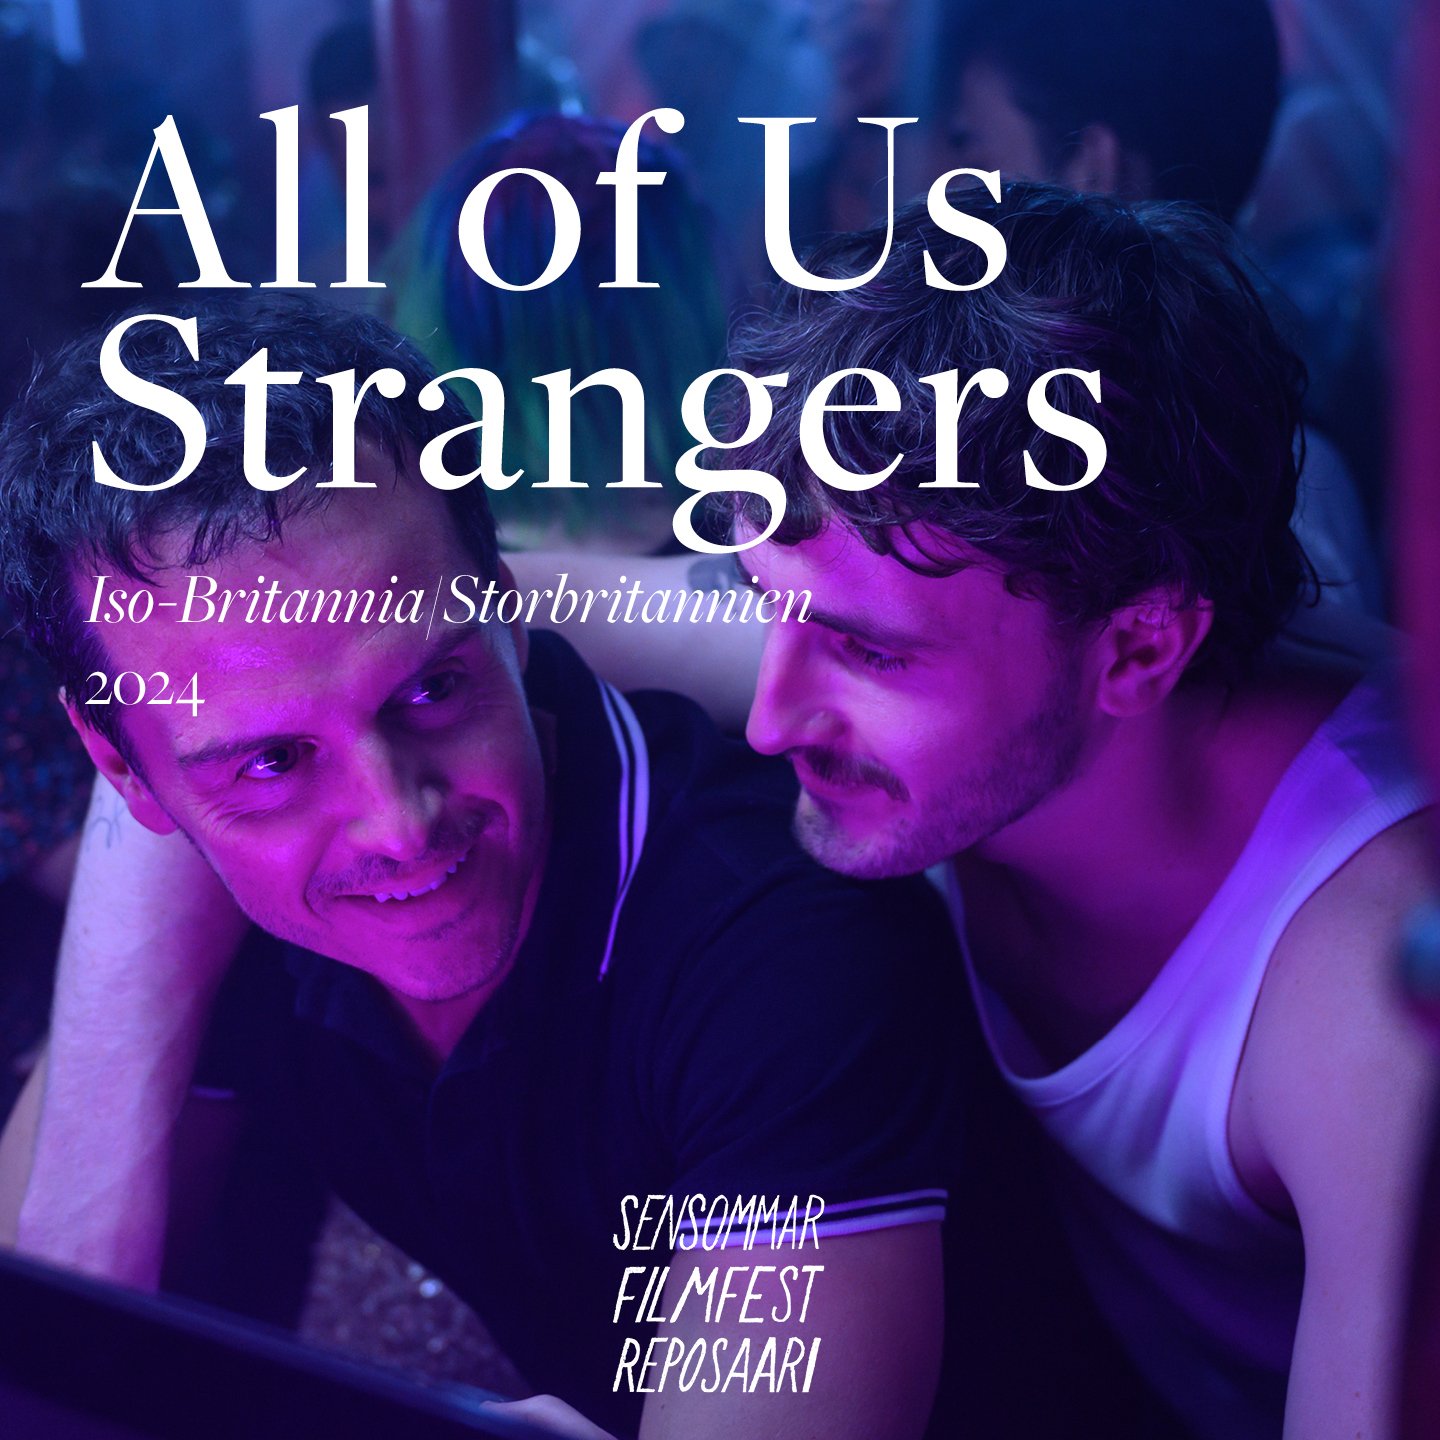 On aika aloittaa vuoden 2024 festivaalin ohjelmiston viikoittainen julkaiseminen!

T&auml;m&auml;n vuoden Sensommarin ensimm&auml;isen&auml; elokuvana julkaistaan Andrew Haighin (mm. 45 vuotta, Weekend) ohjaama All of Us Strangers, joka on kev&auml;&